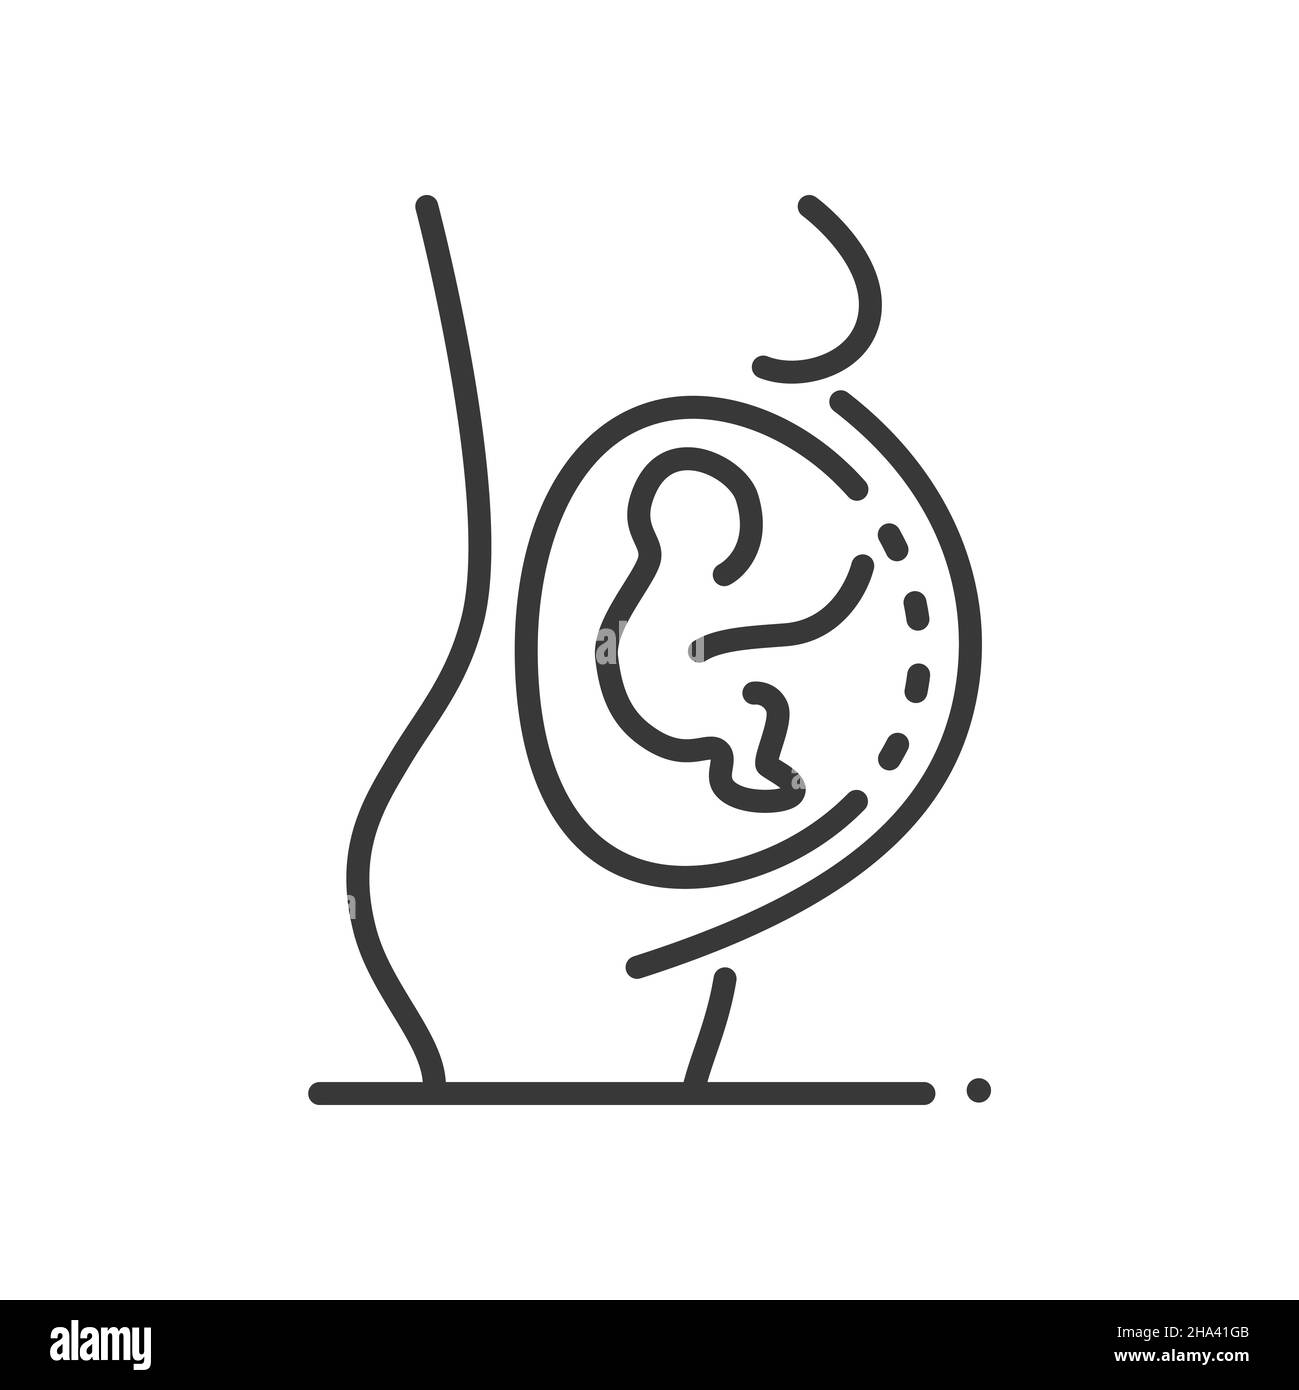 Schwangerschaft - Vektor-Liniendesign einzelnes isoliertes Symbol auf weißem Hintergrund. Hochwertiges schwarzes Piktogramm. Sagittaler Abschnitt einer Schwangeren mit Stock Vektor